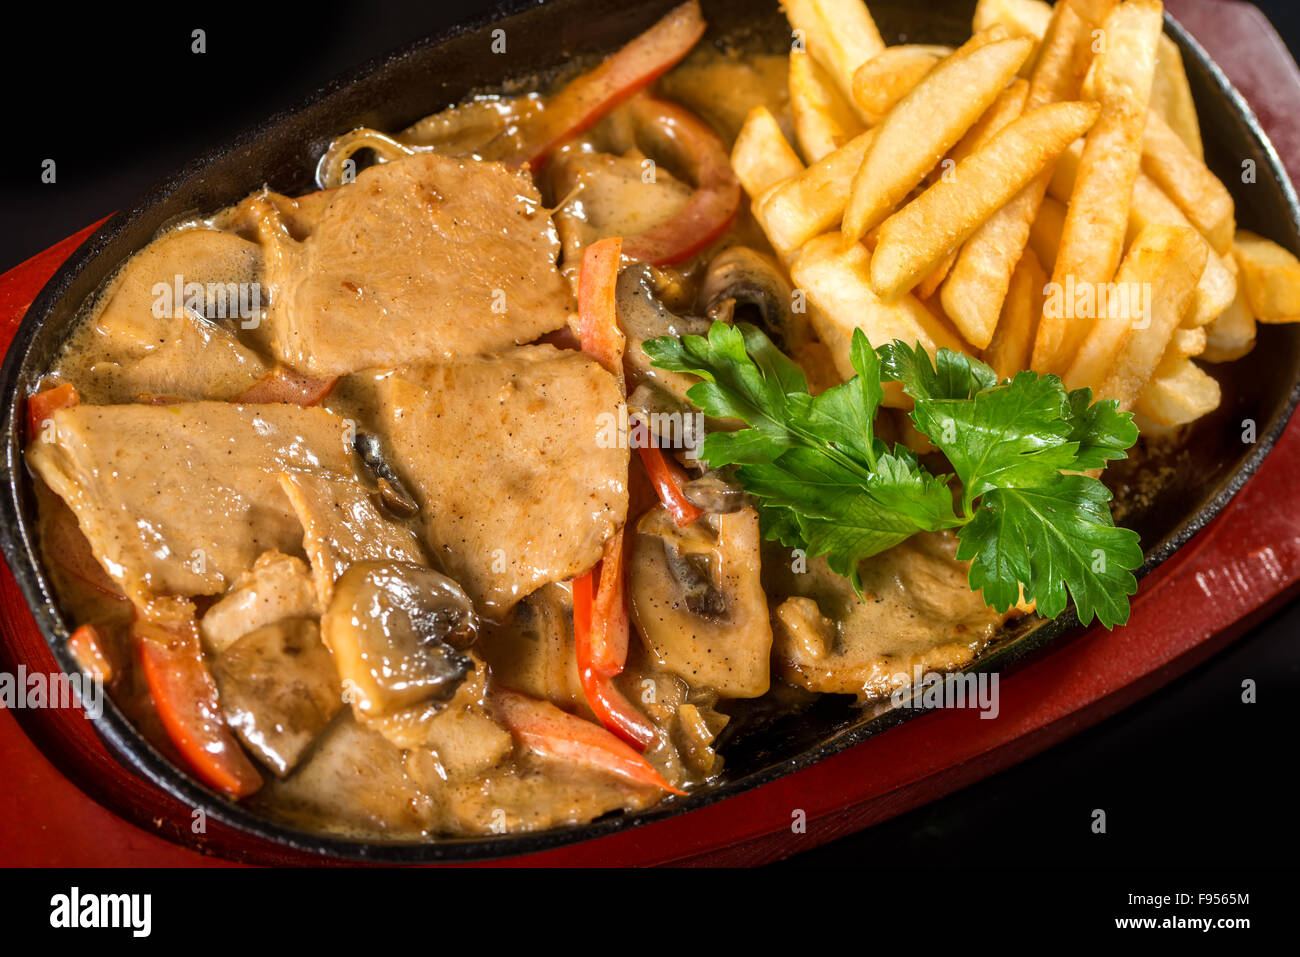 Gustosi piatti a base di carne con patate fritte Foto Stock